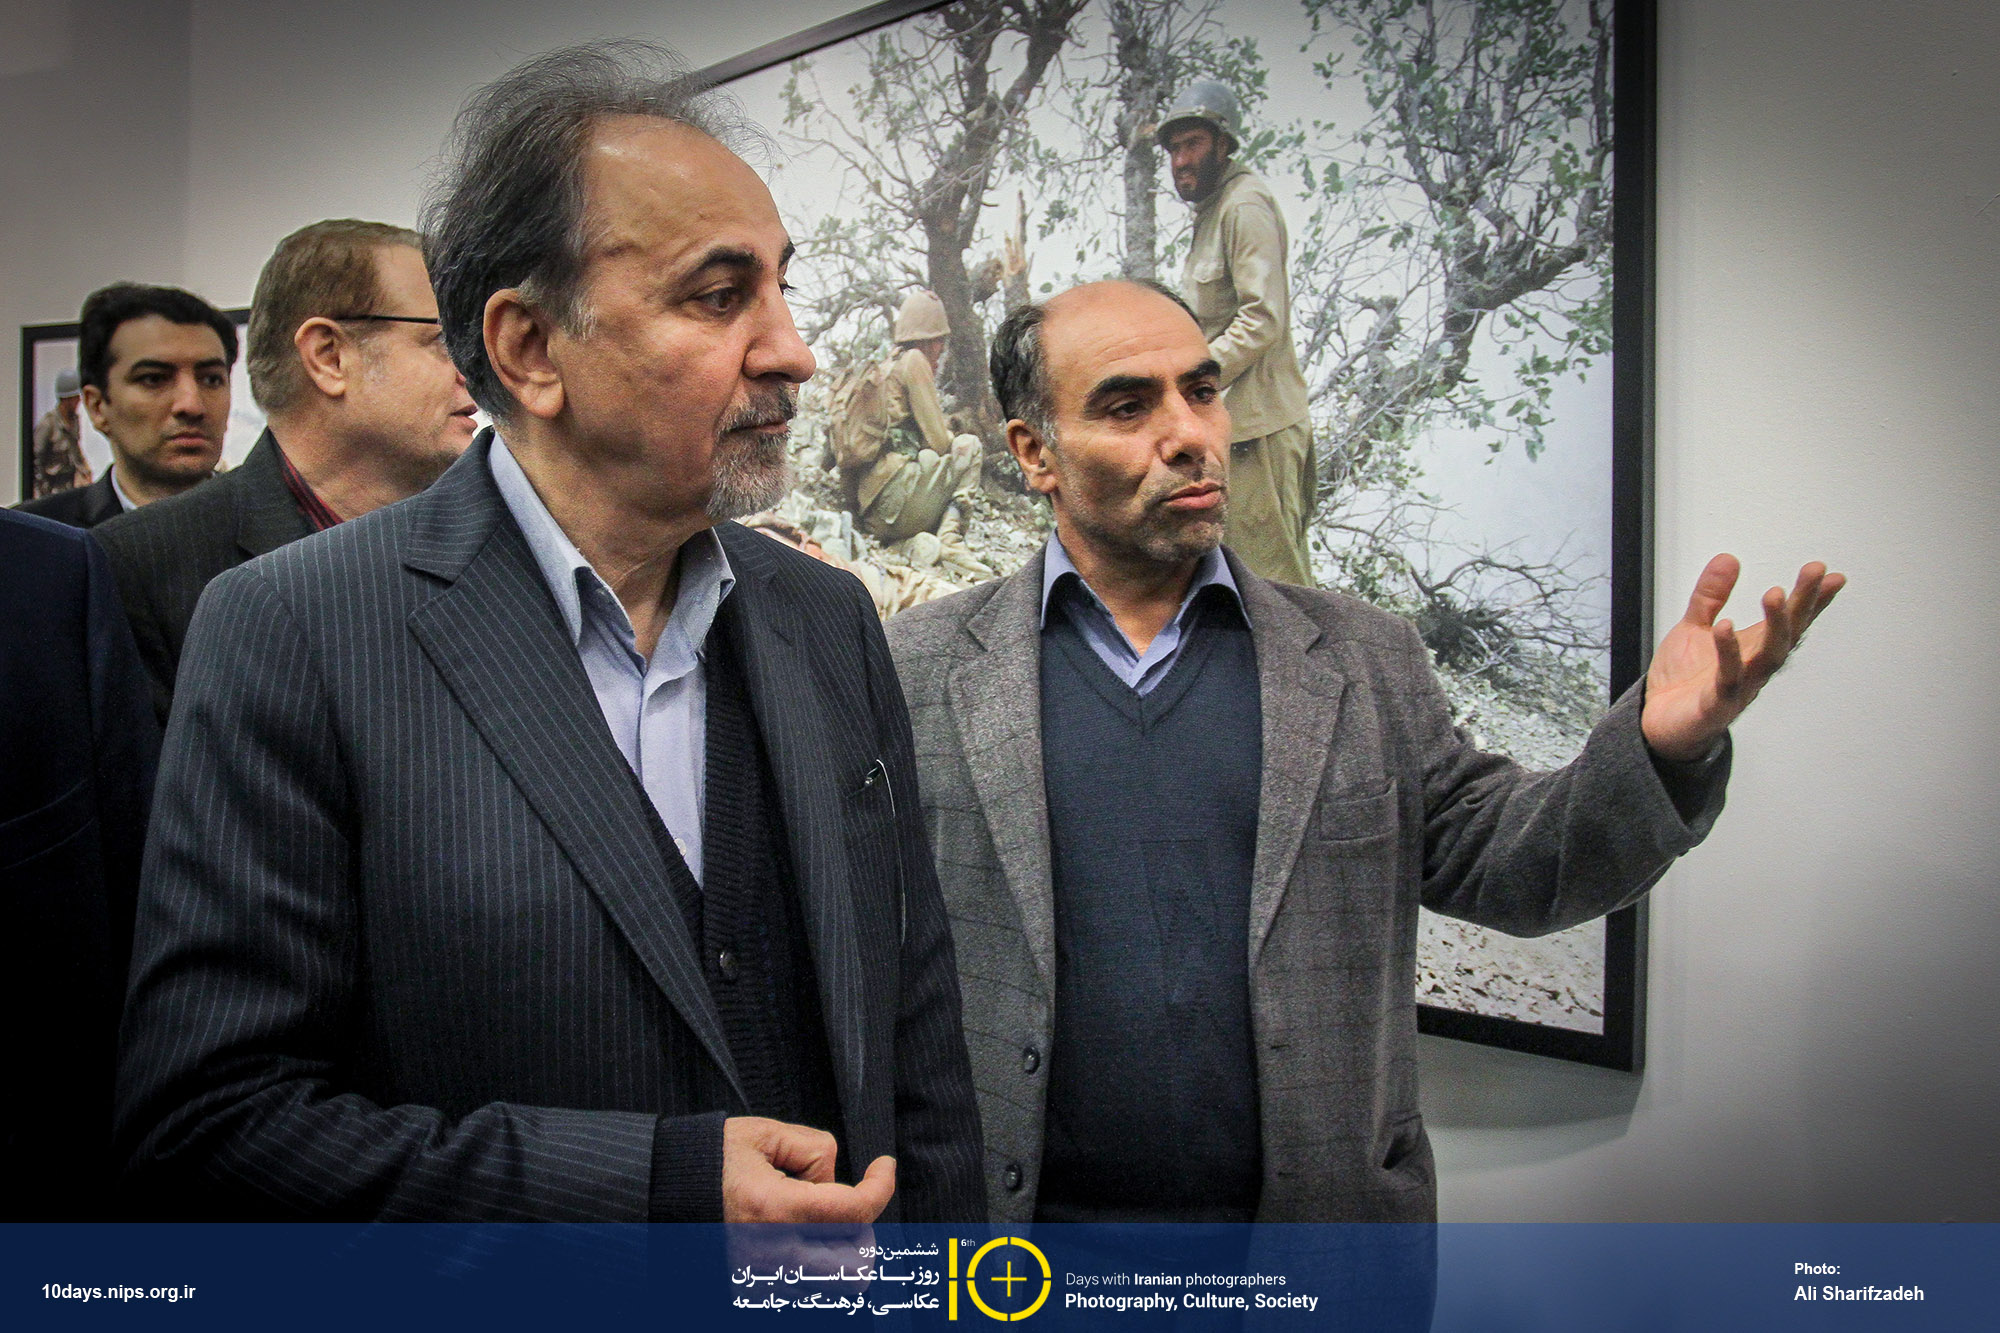 بازدید شهردار تهران از نمایشگاه های ششمین دوره ۱۰ روز با عکاسان